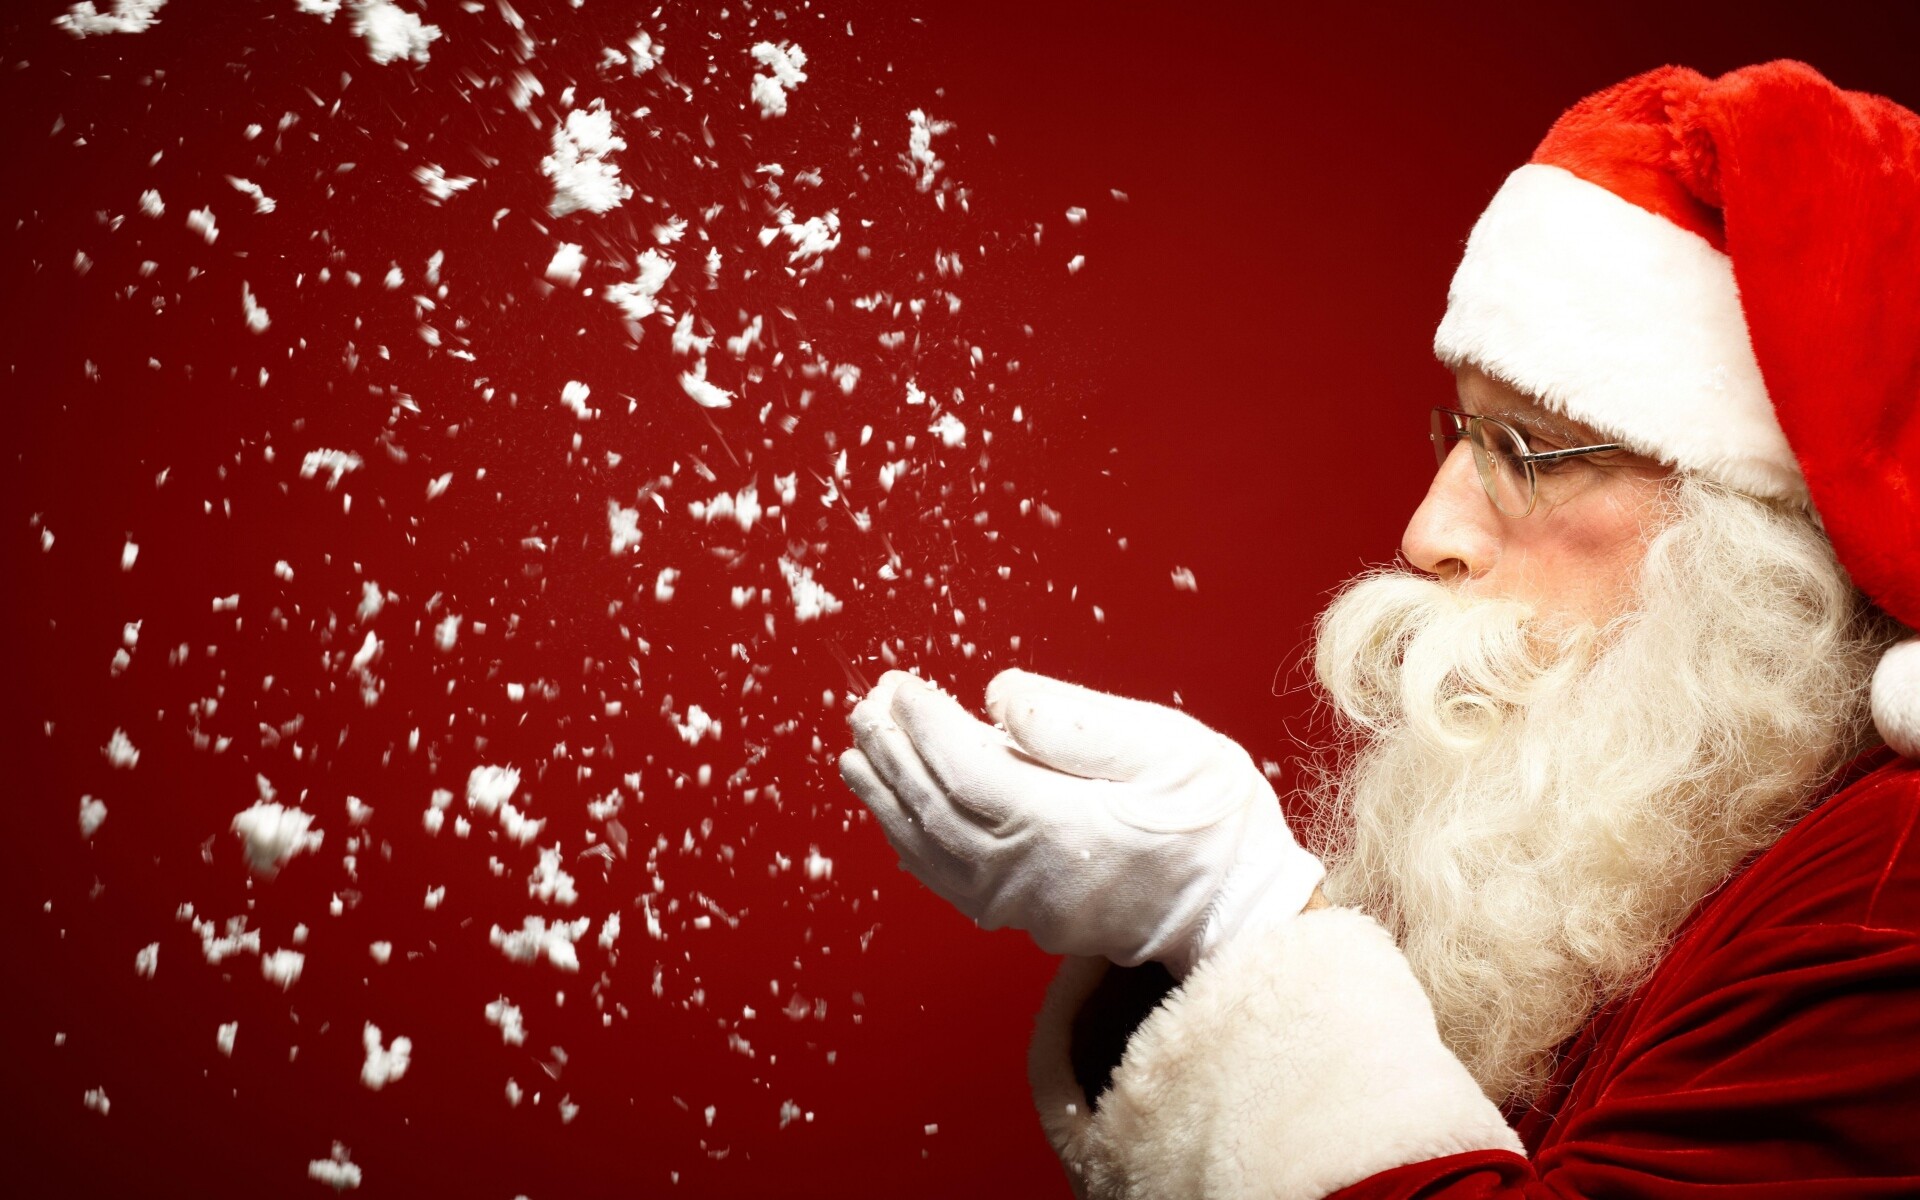 Santa Claus: Has 9 reindeer pulling his flying sleigh, Saint Nicholas. 1920x1200 HD Background.